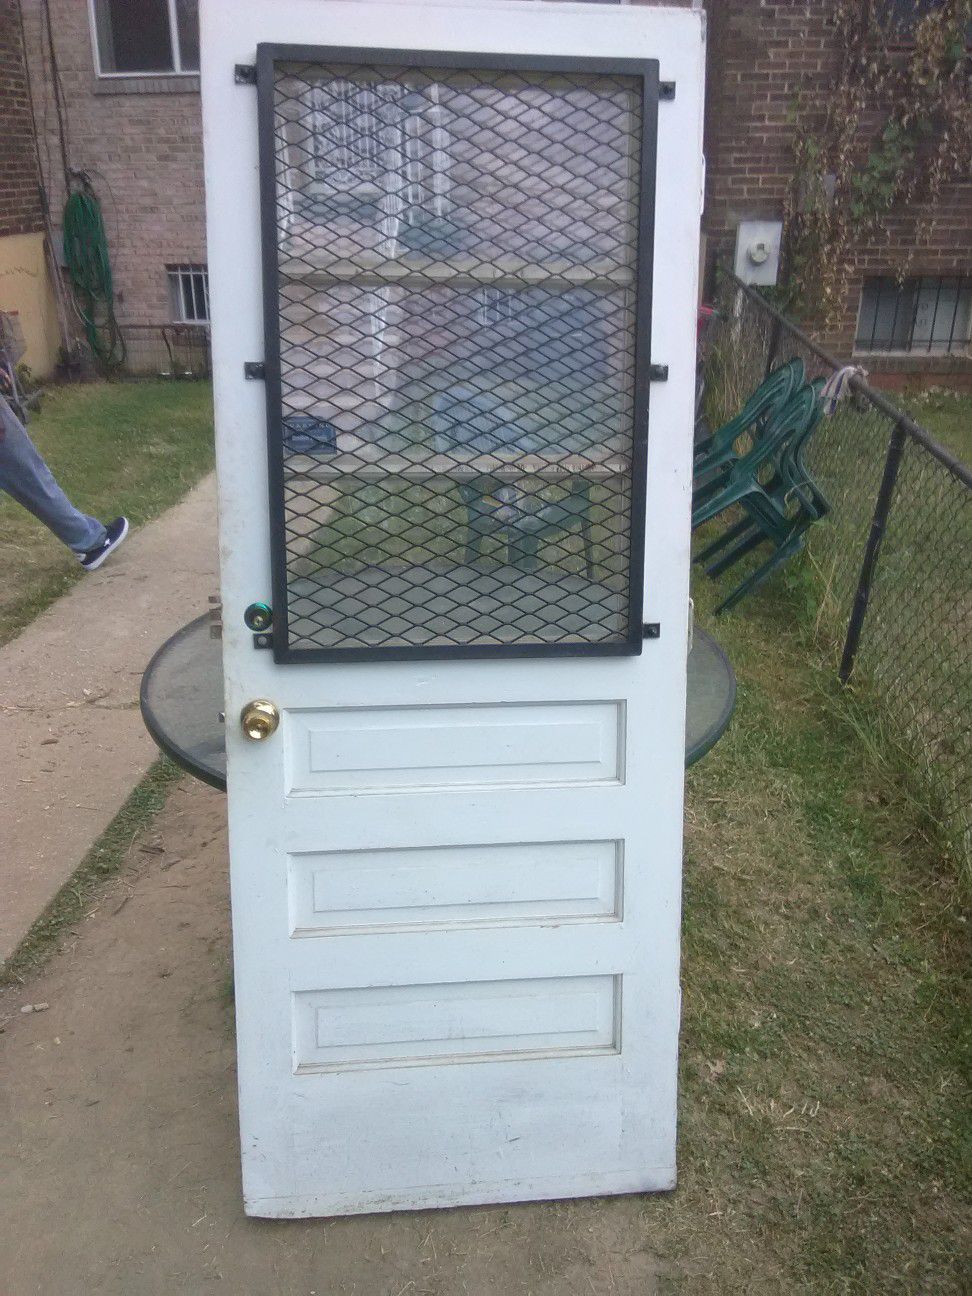 82" x 32" Exterior Security Door with Stainless Steel grate, door knob fixtures,hinges, and lock fixture with keys